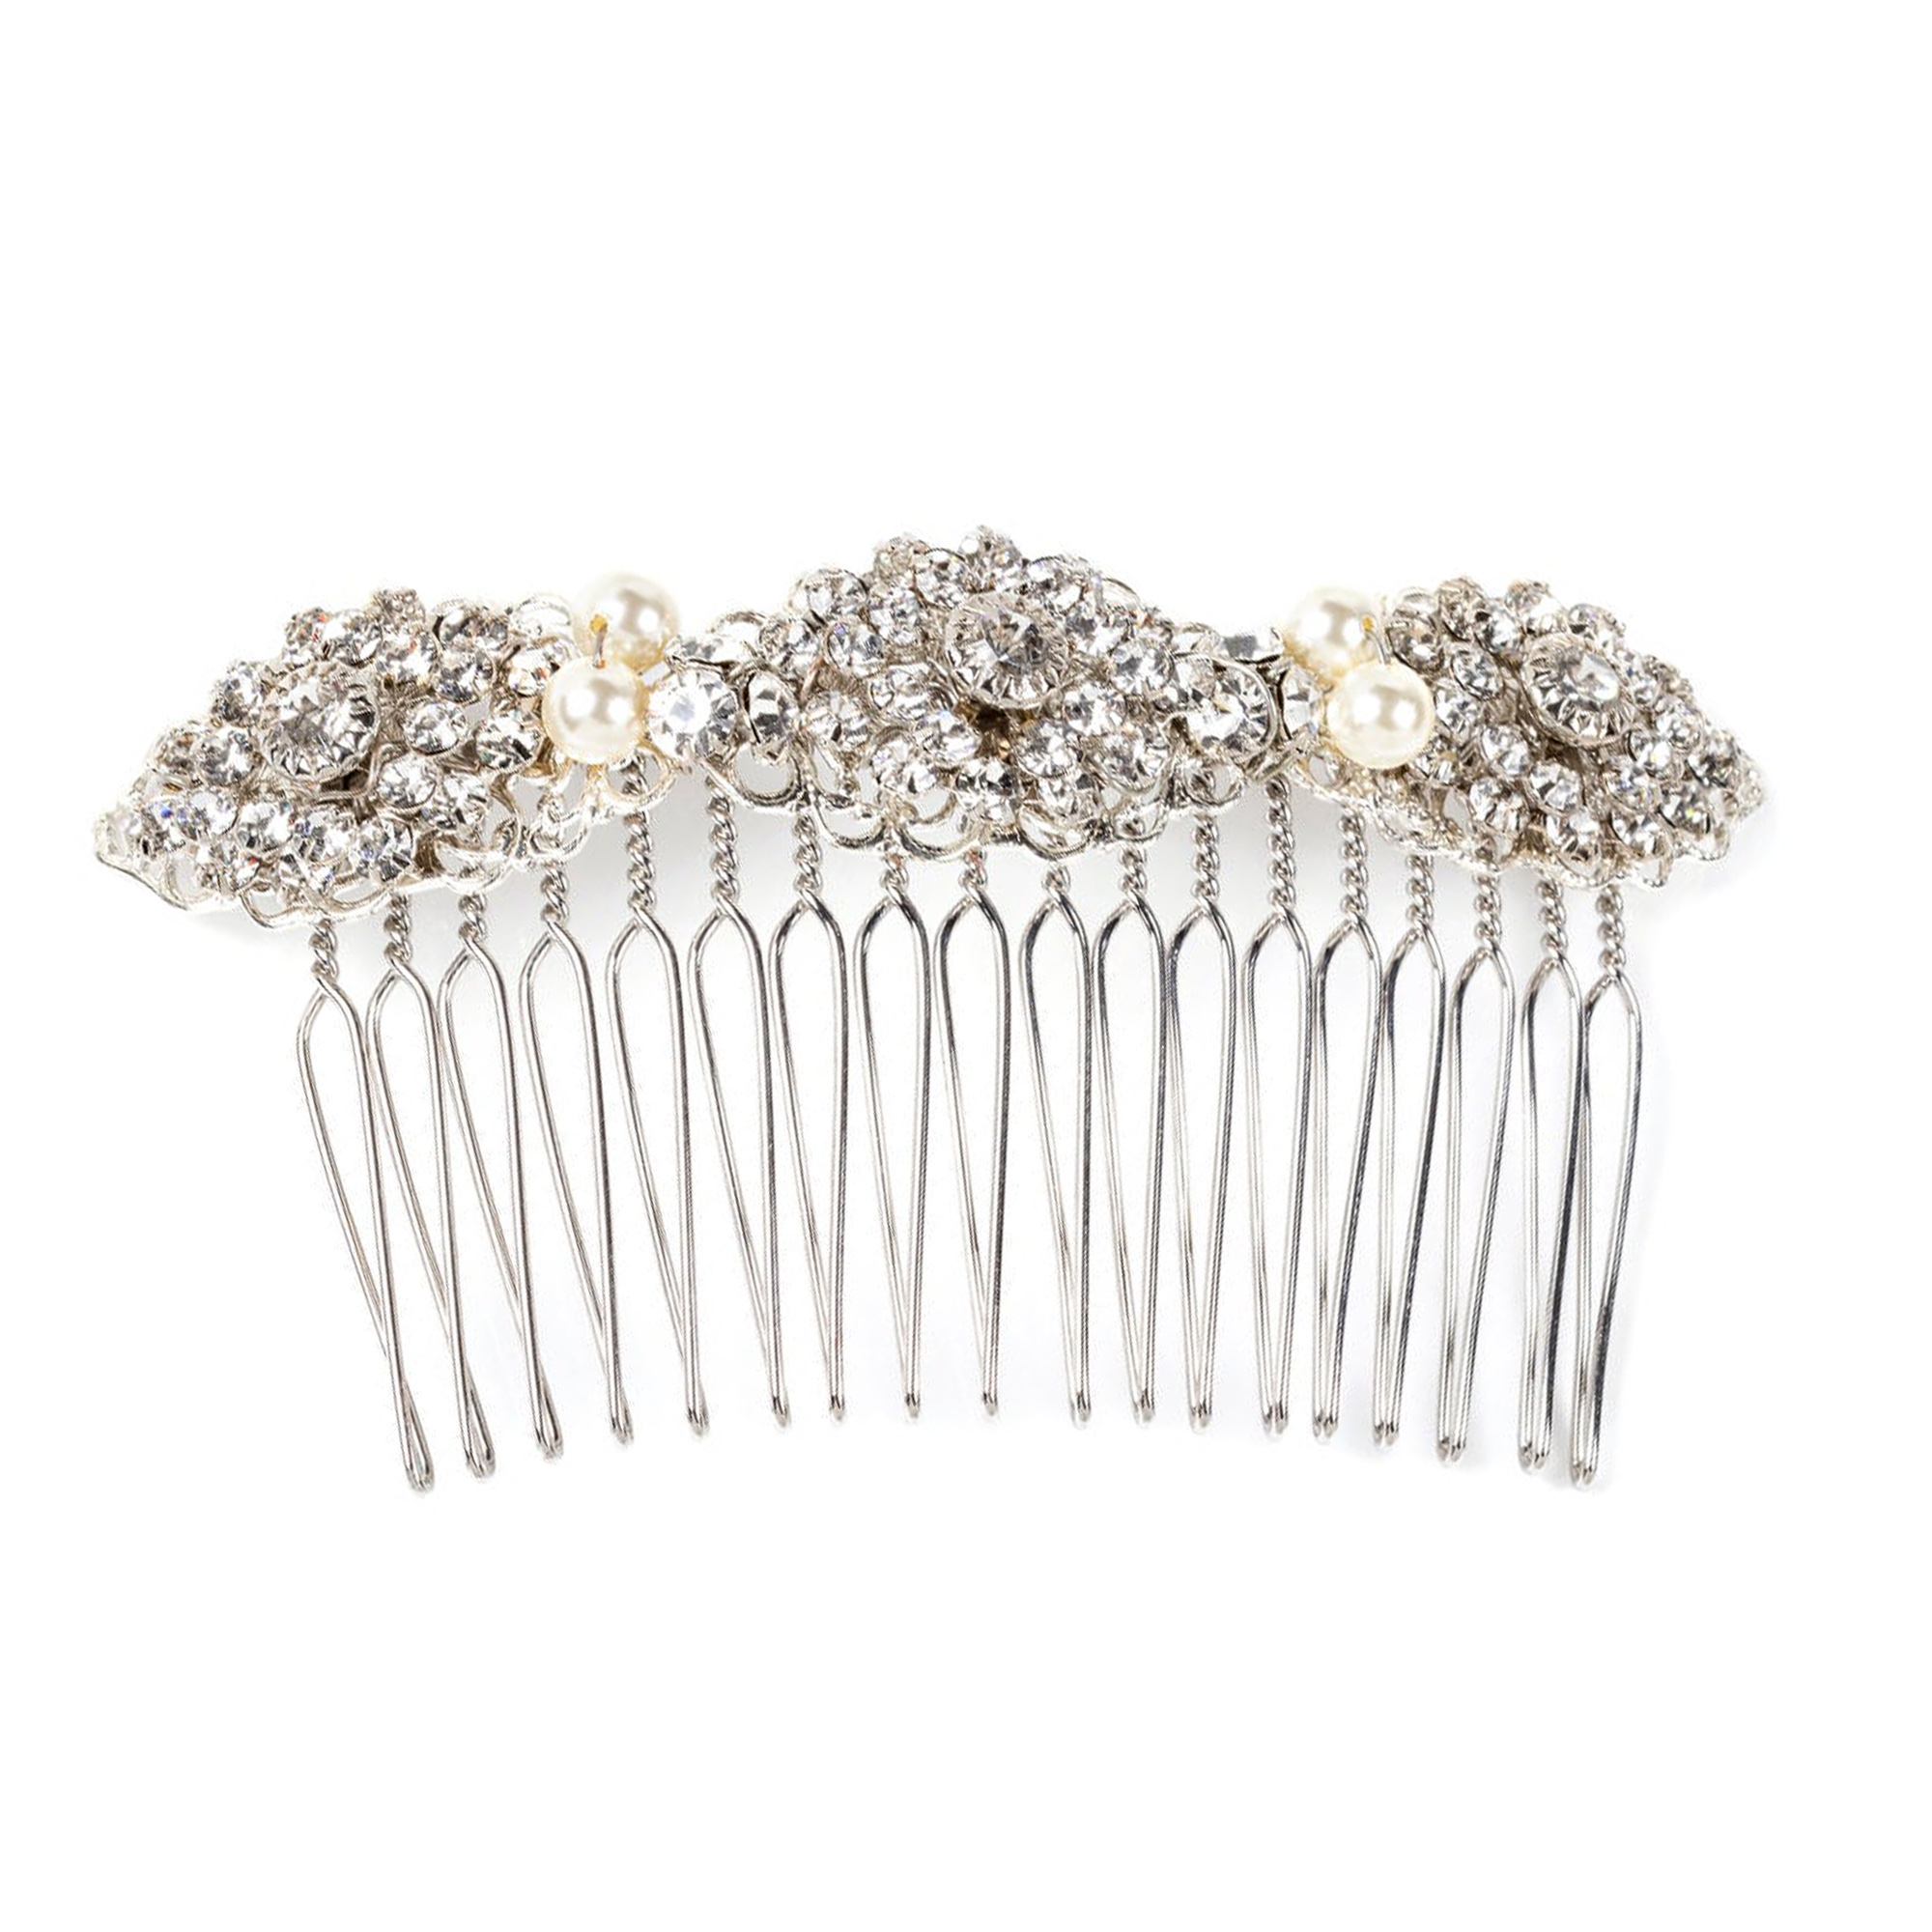 Cinderella Comb - Silver - Ellen Hunter NYC - Luxury Bridal Jewelry